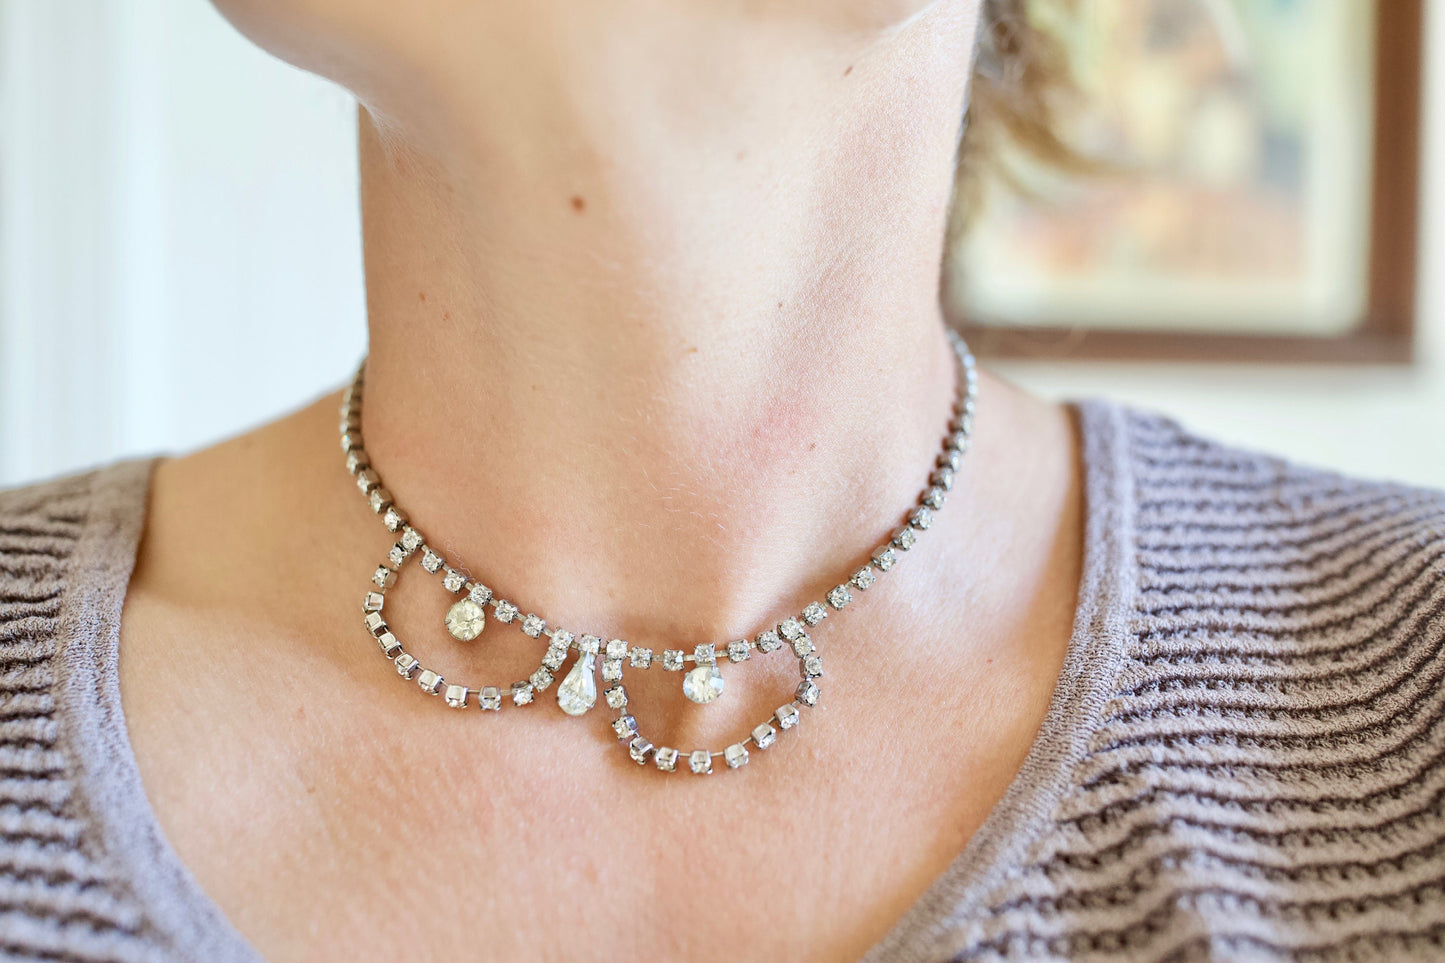 Vintage Rhinestone Choker Necklace - Crystal Rhinestone Necklace